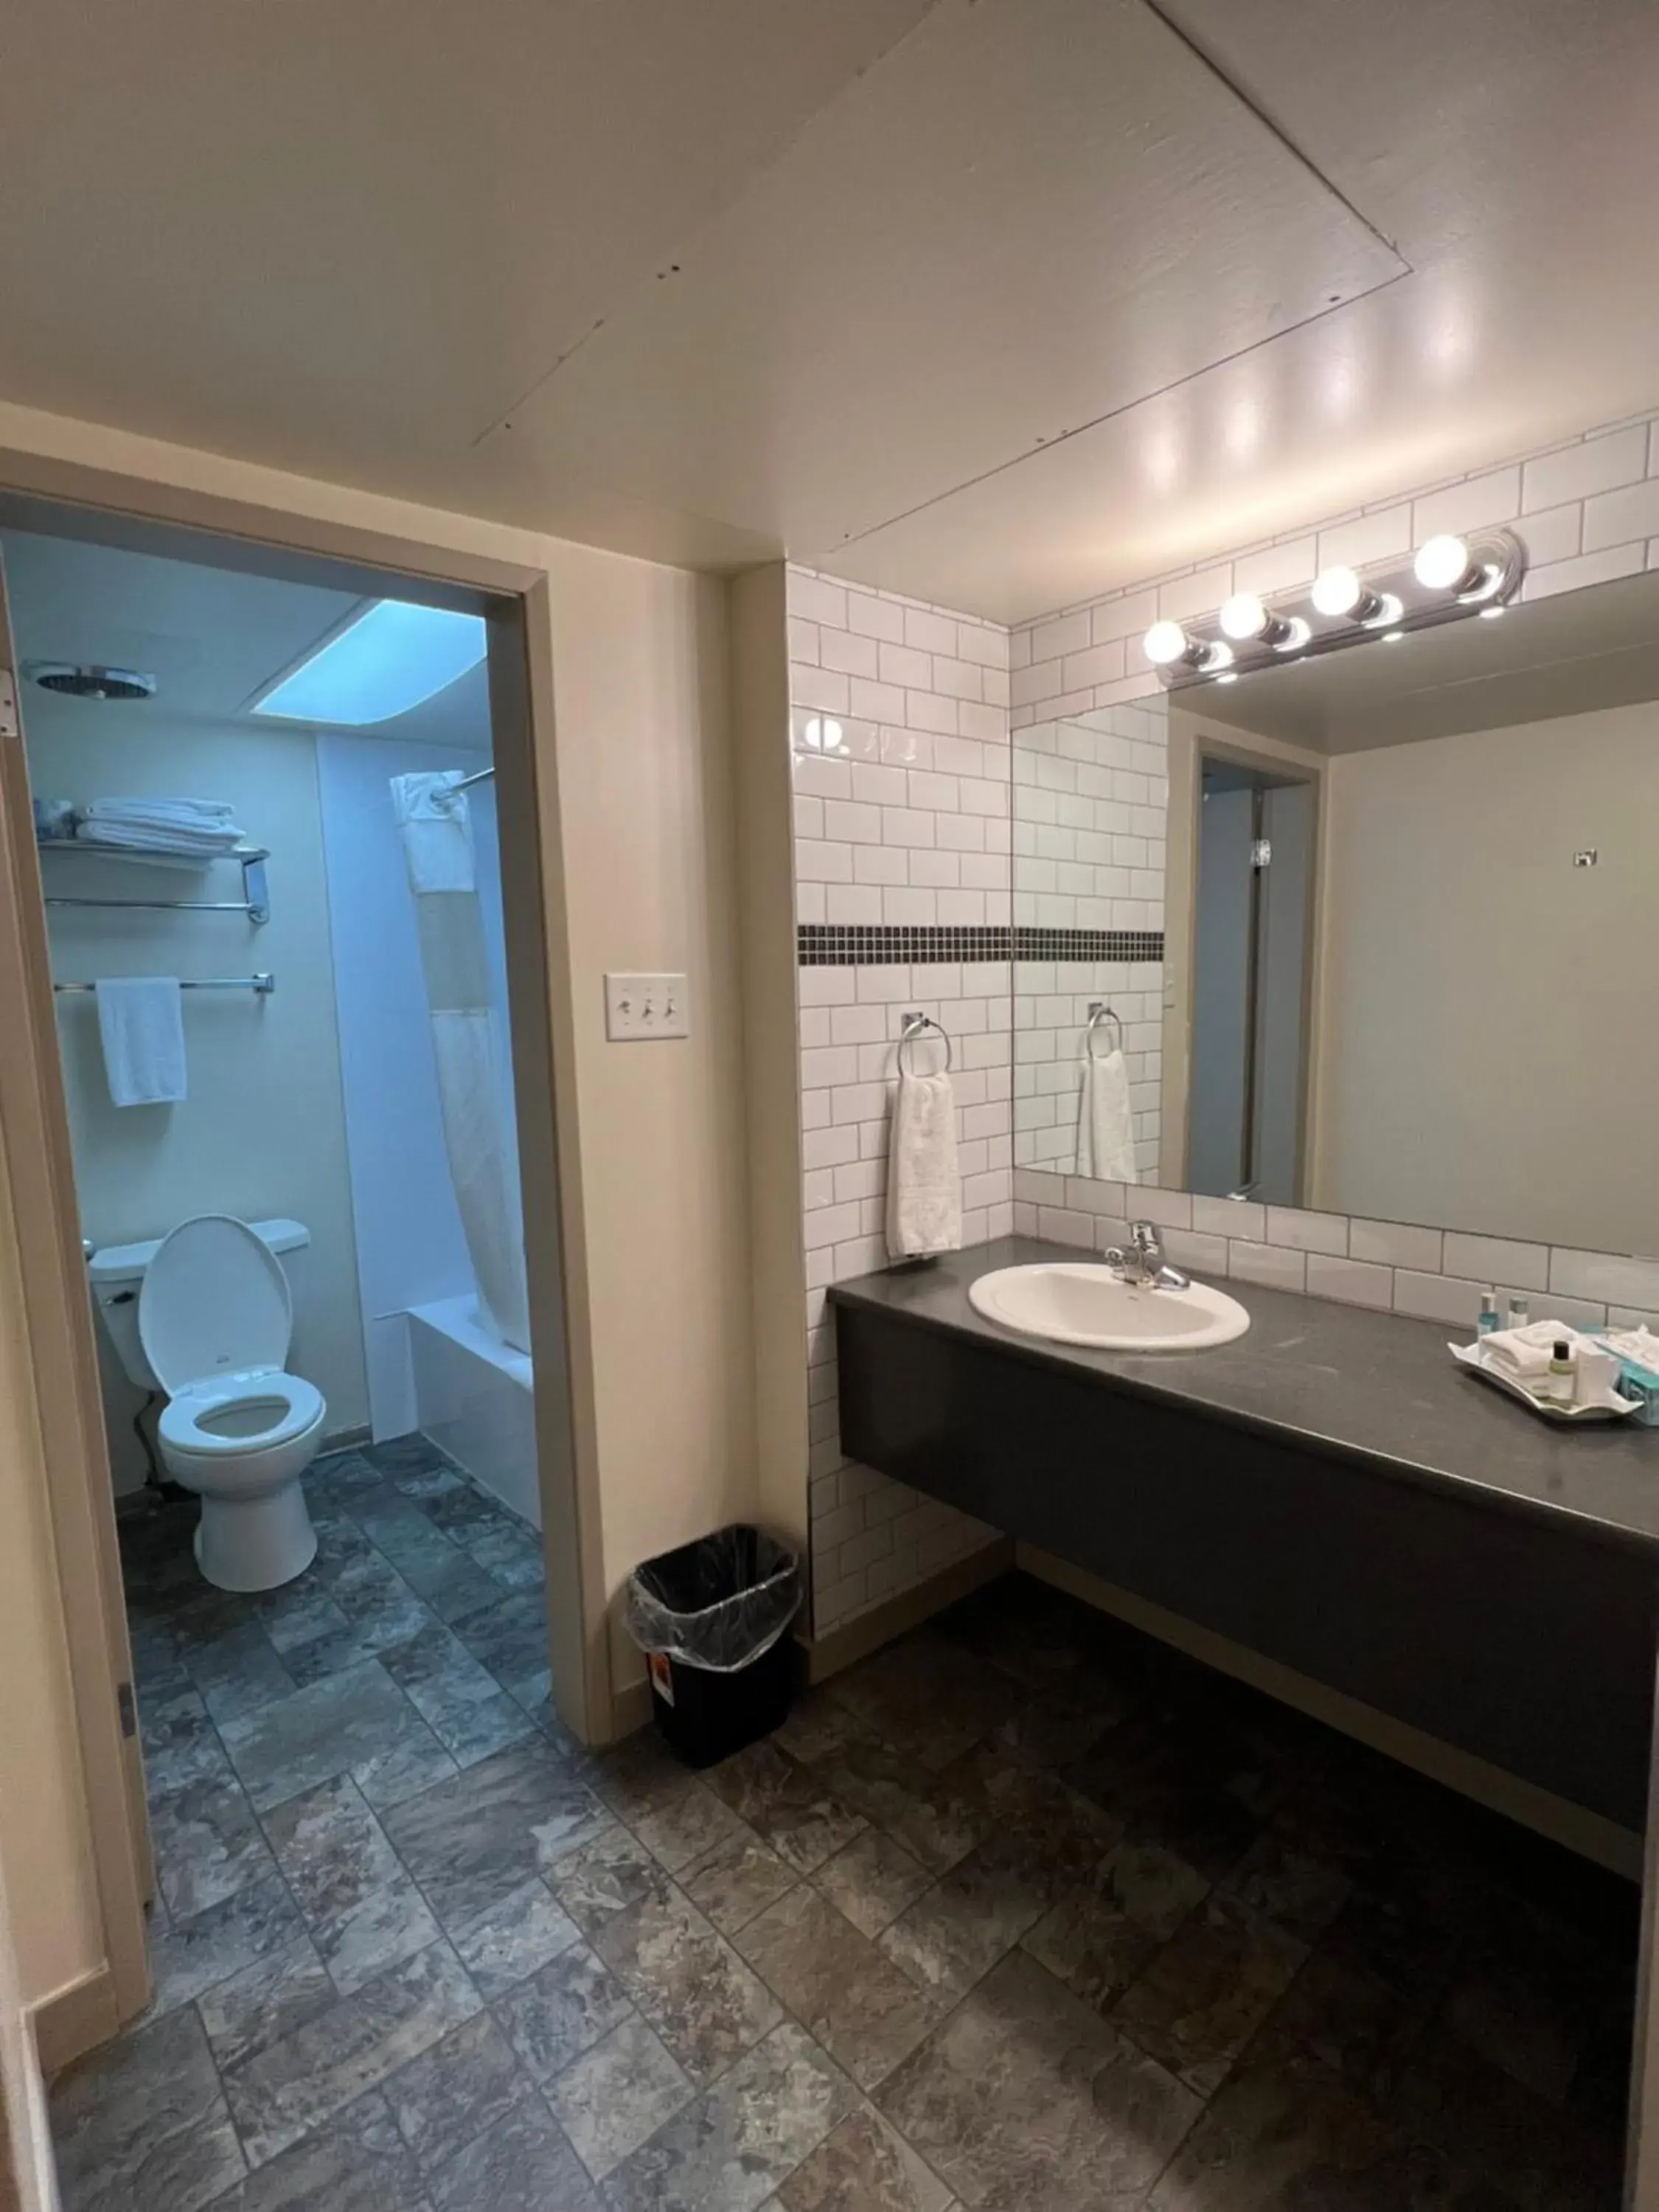 Bathroom in DIVYA SUTRA Riviera Plaza and Conference Centre, Vernon, BC